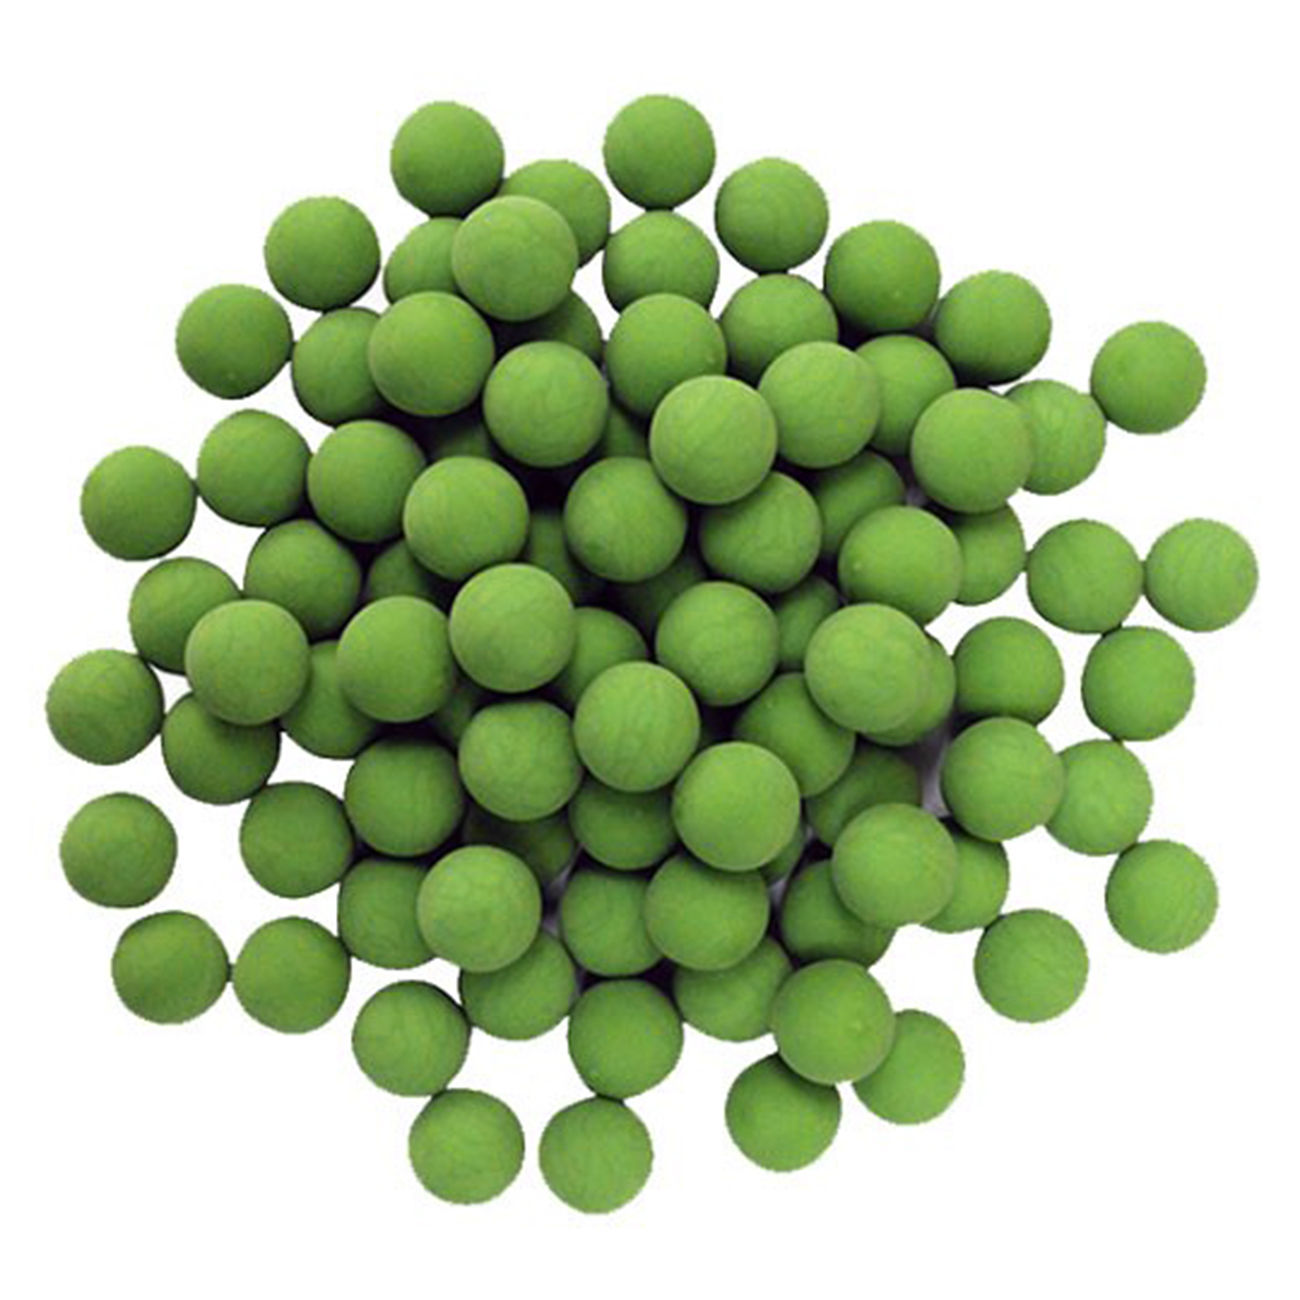 New Legion Gummigeschosse Rubber Balls Kaliber .68 100 Stück grün